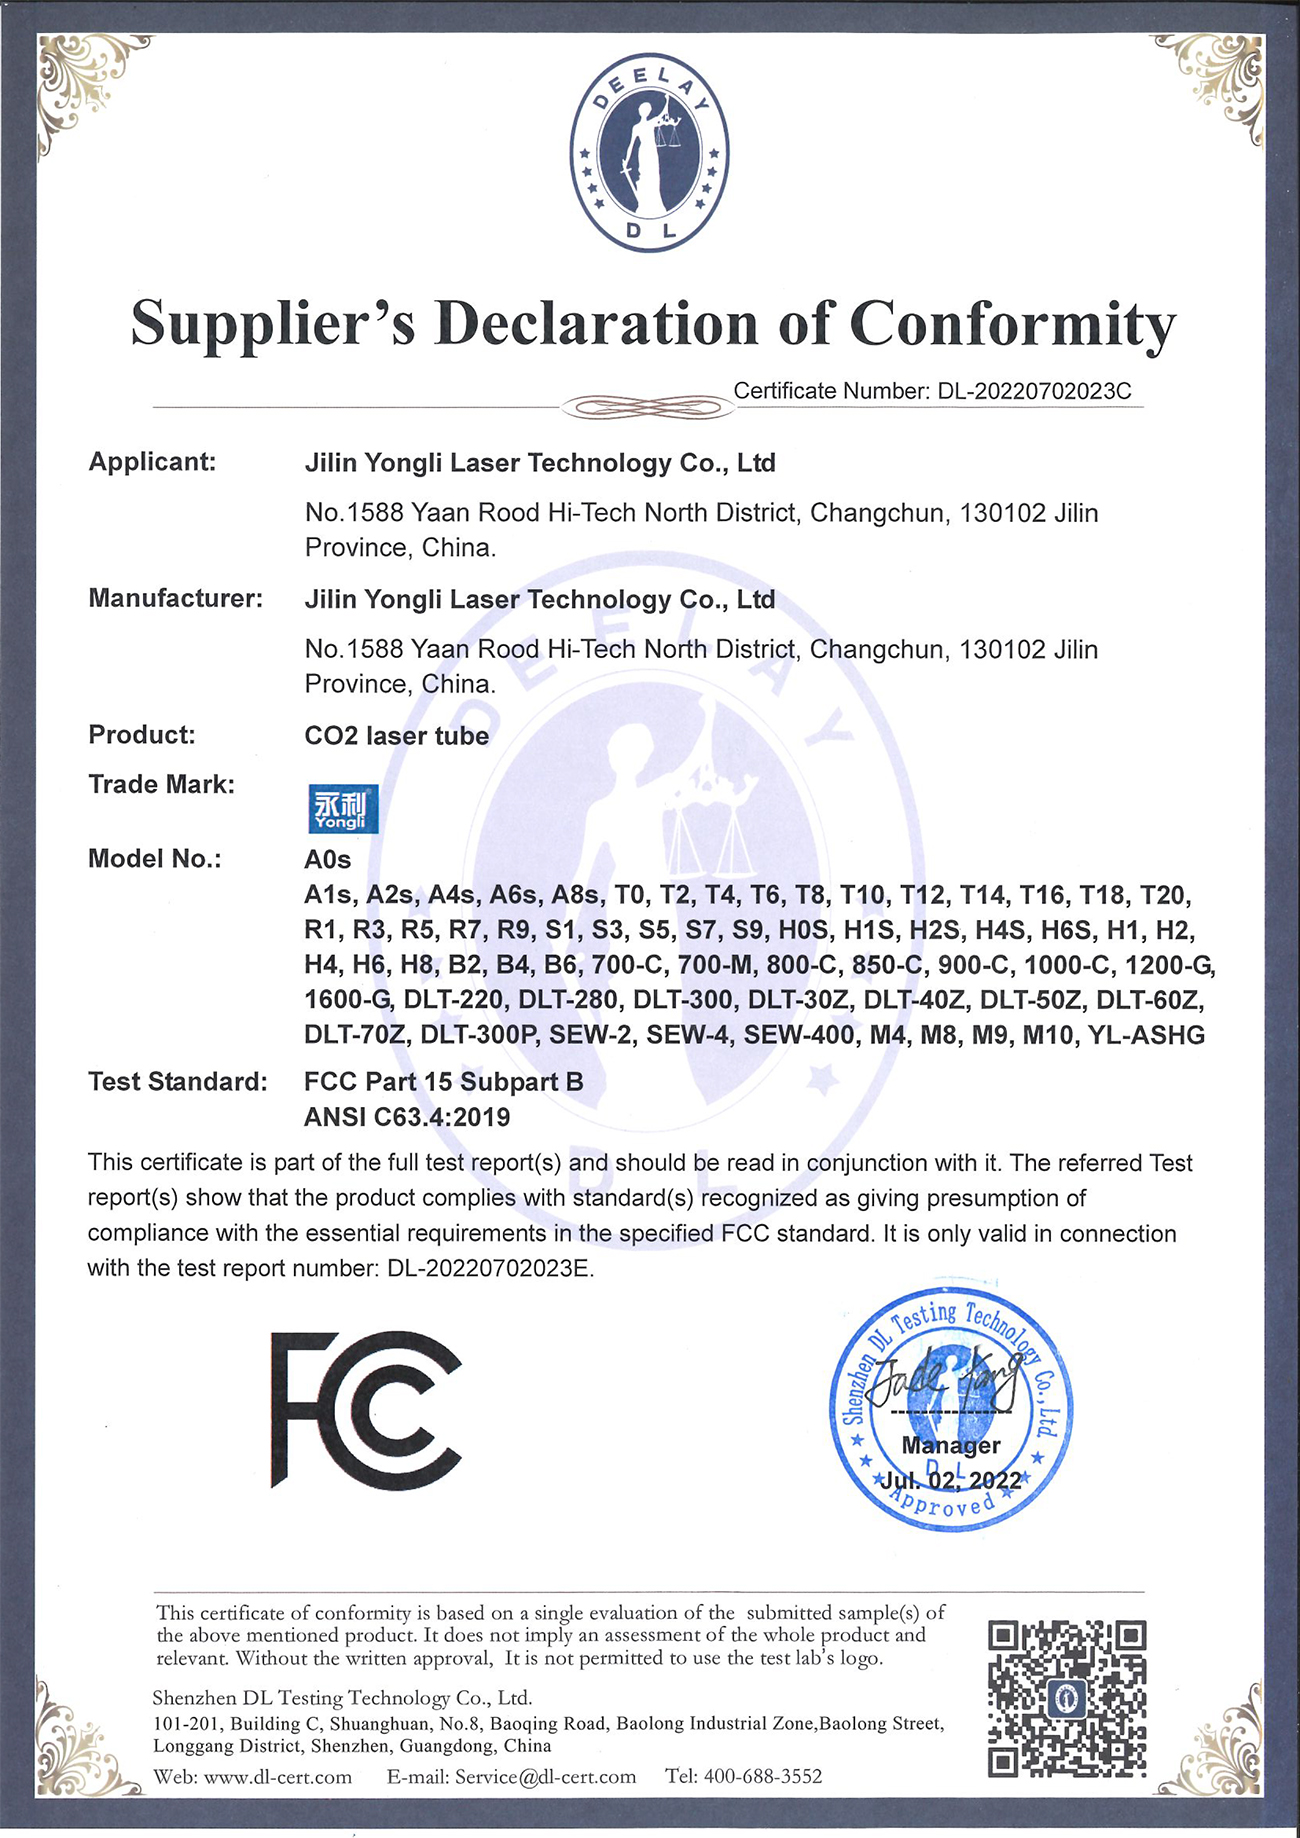 二氧化碳激光器 红光指示 FCC  证书.jpg